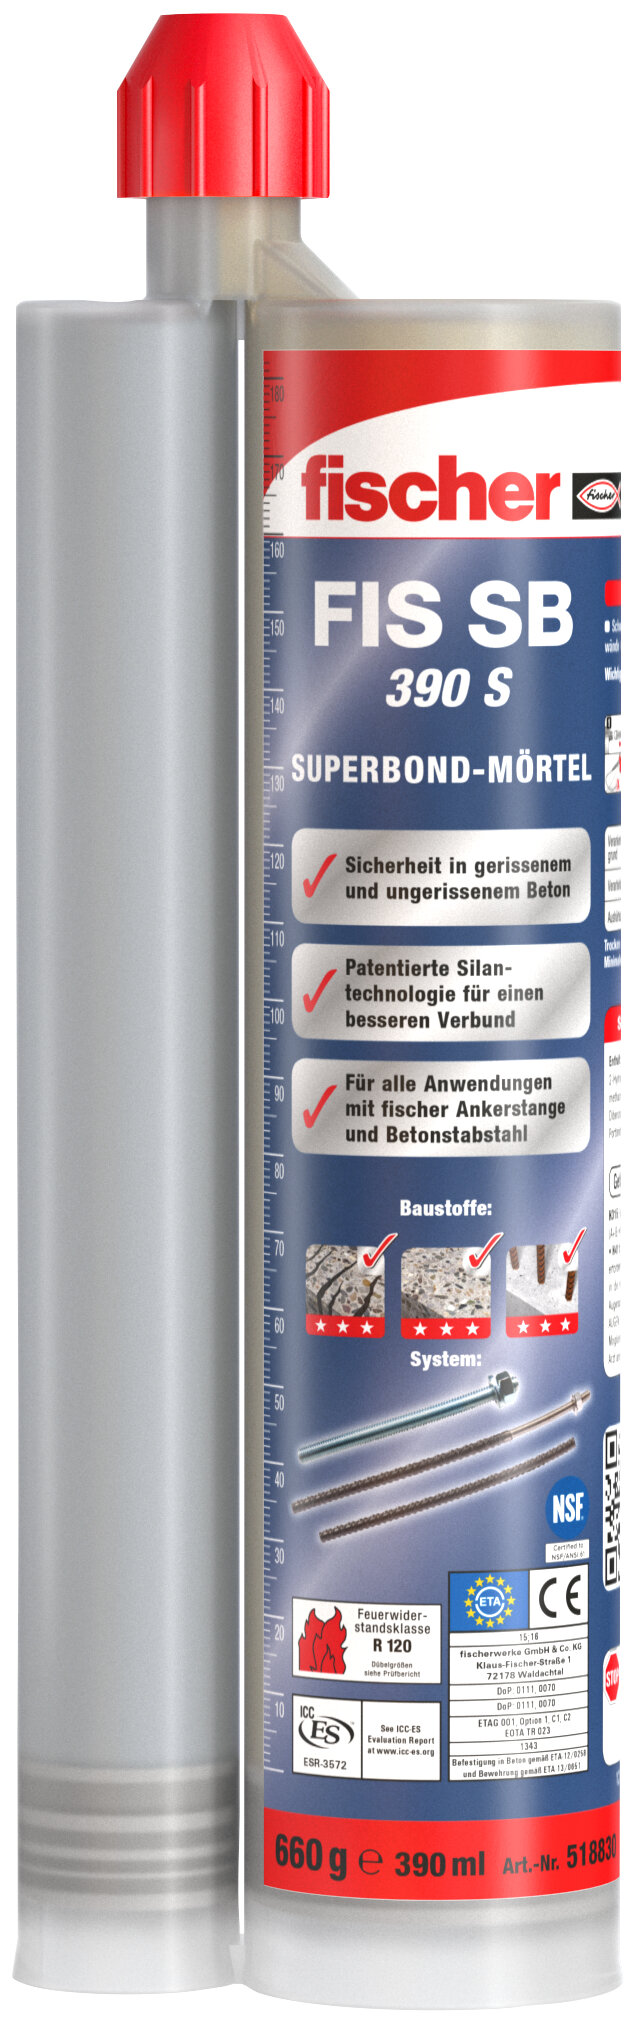 Superbond-Mörtel FIS SB